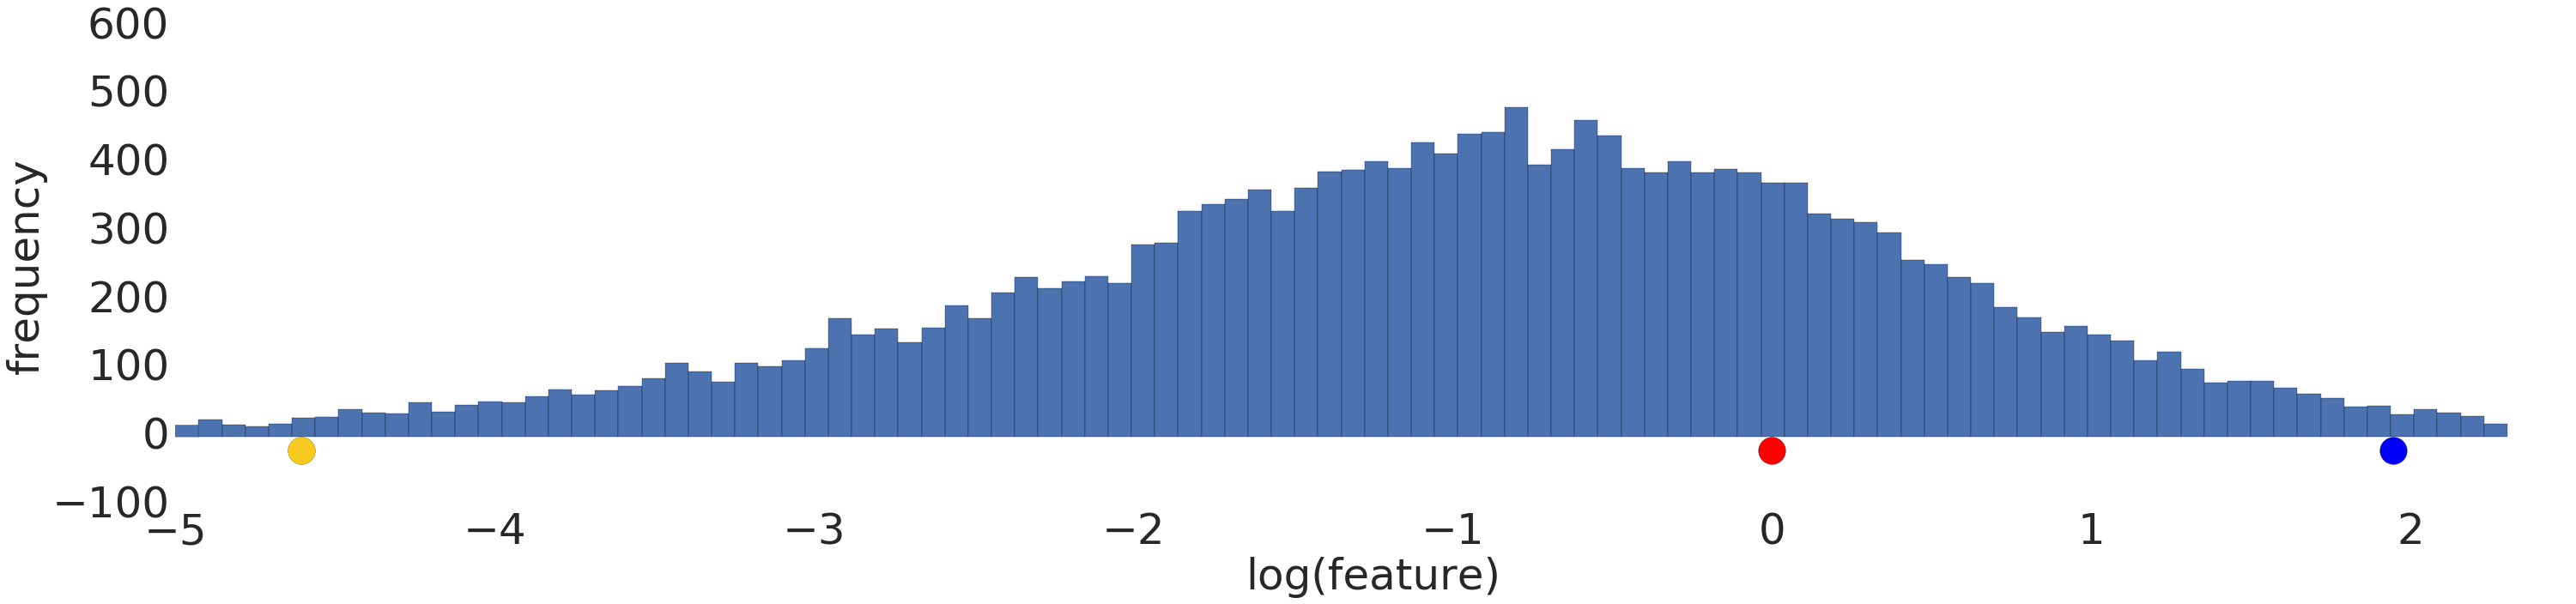 Grafik yang menampilkan distribusi normal (Gaussian)